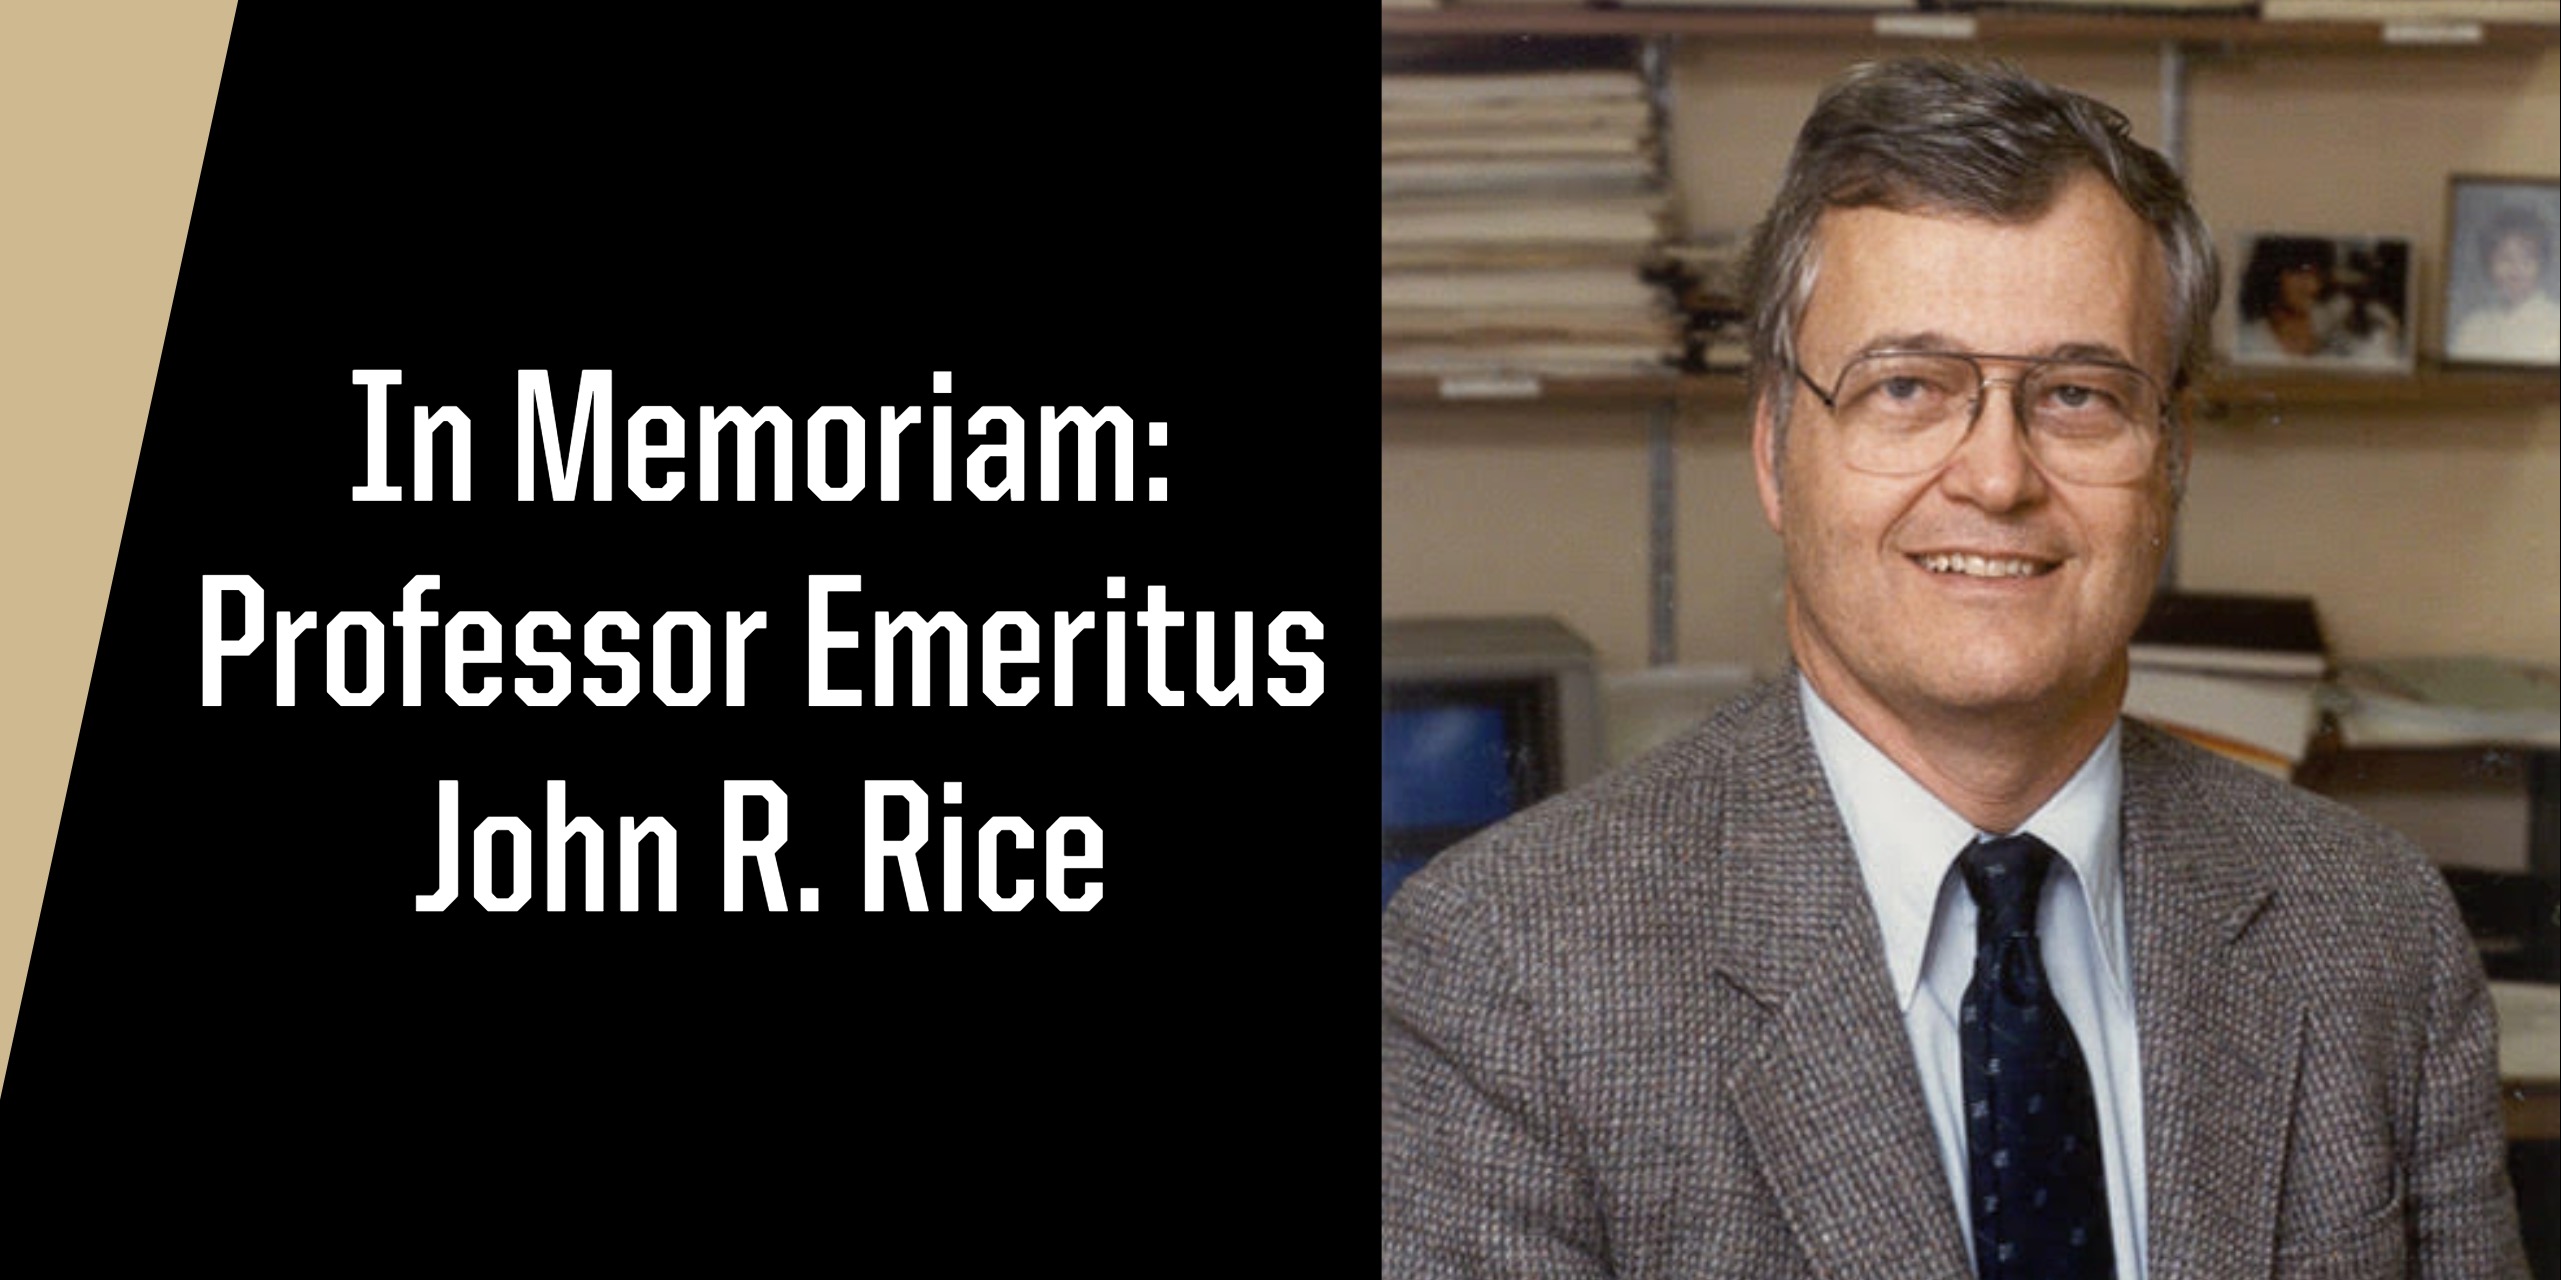 In Memoriam: Professor Emeritus John R. Rice